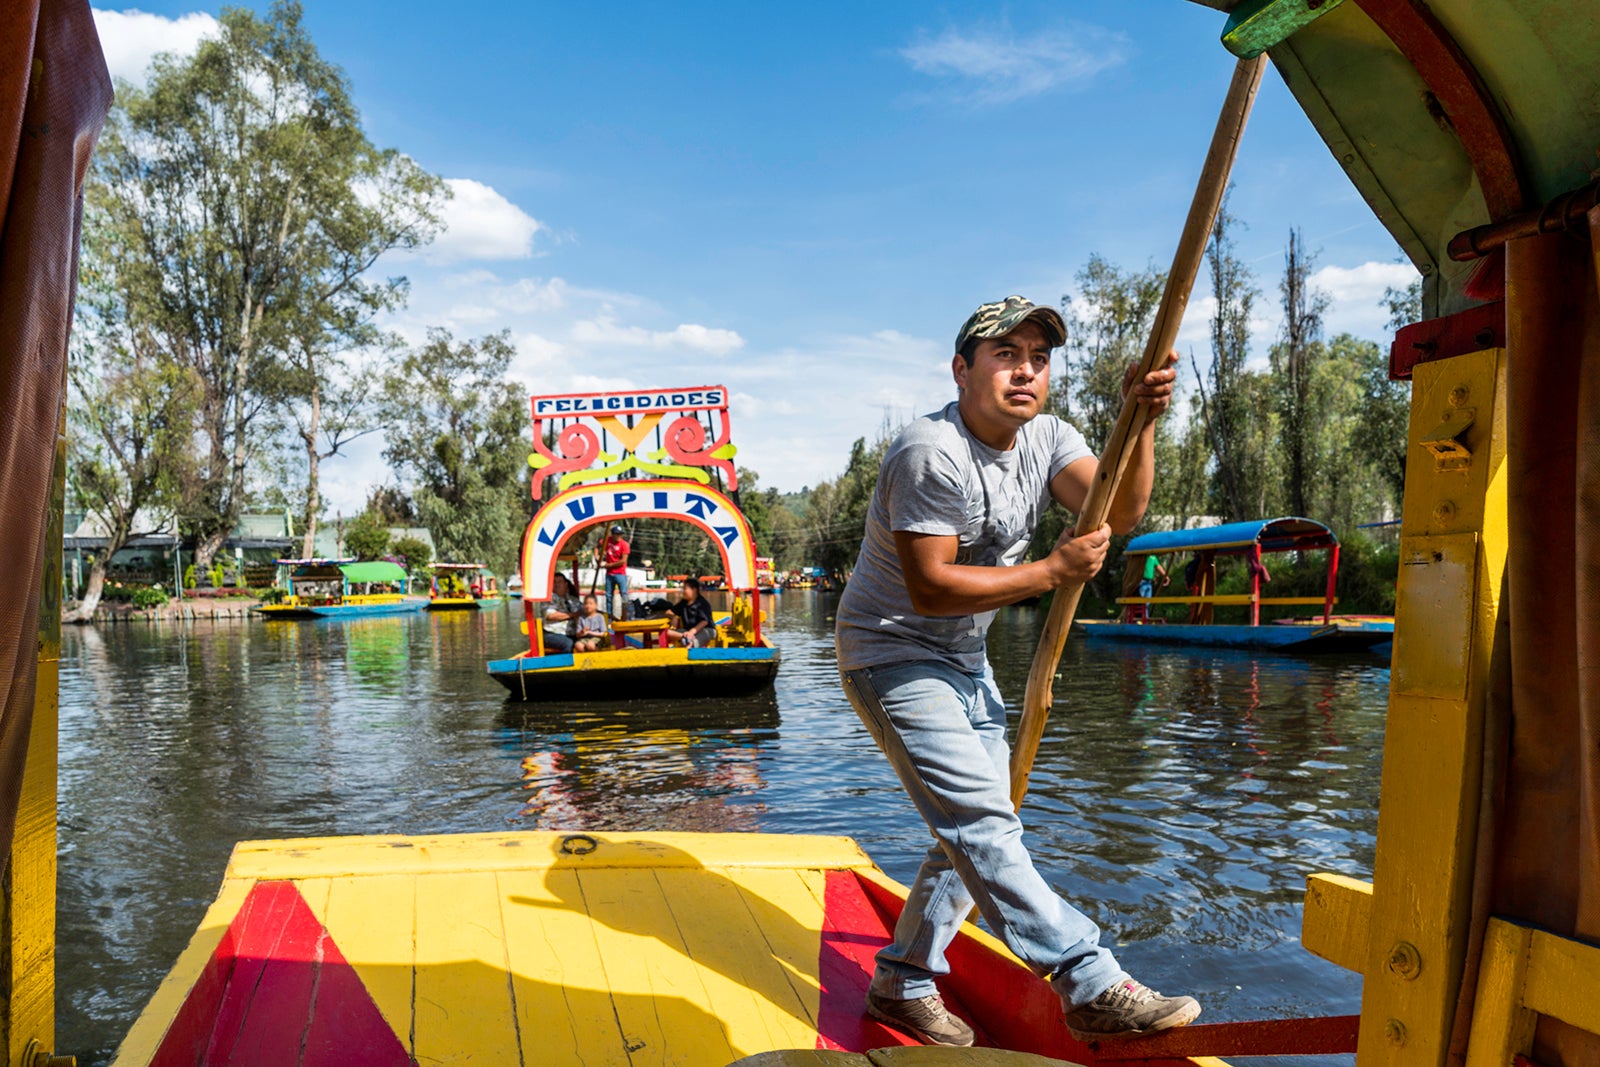 Trajinera on canals floating in Xochimilco Mexico City Matt Mawson